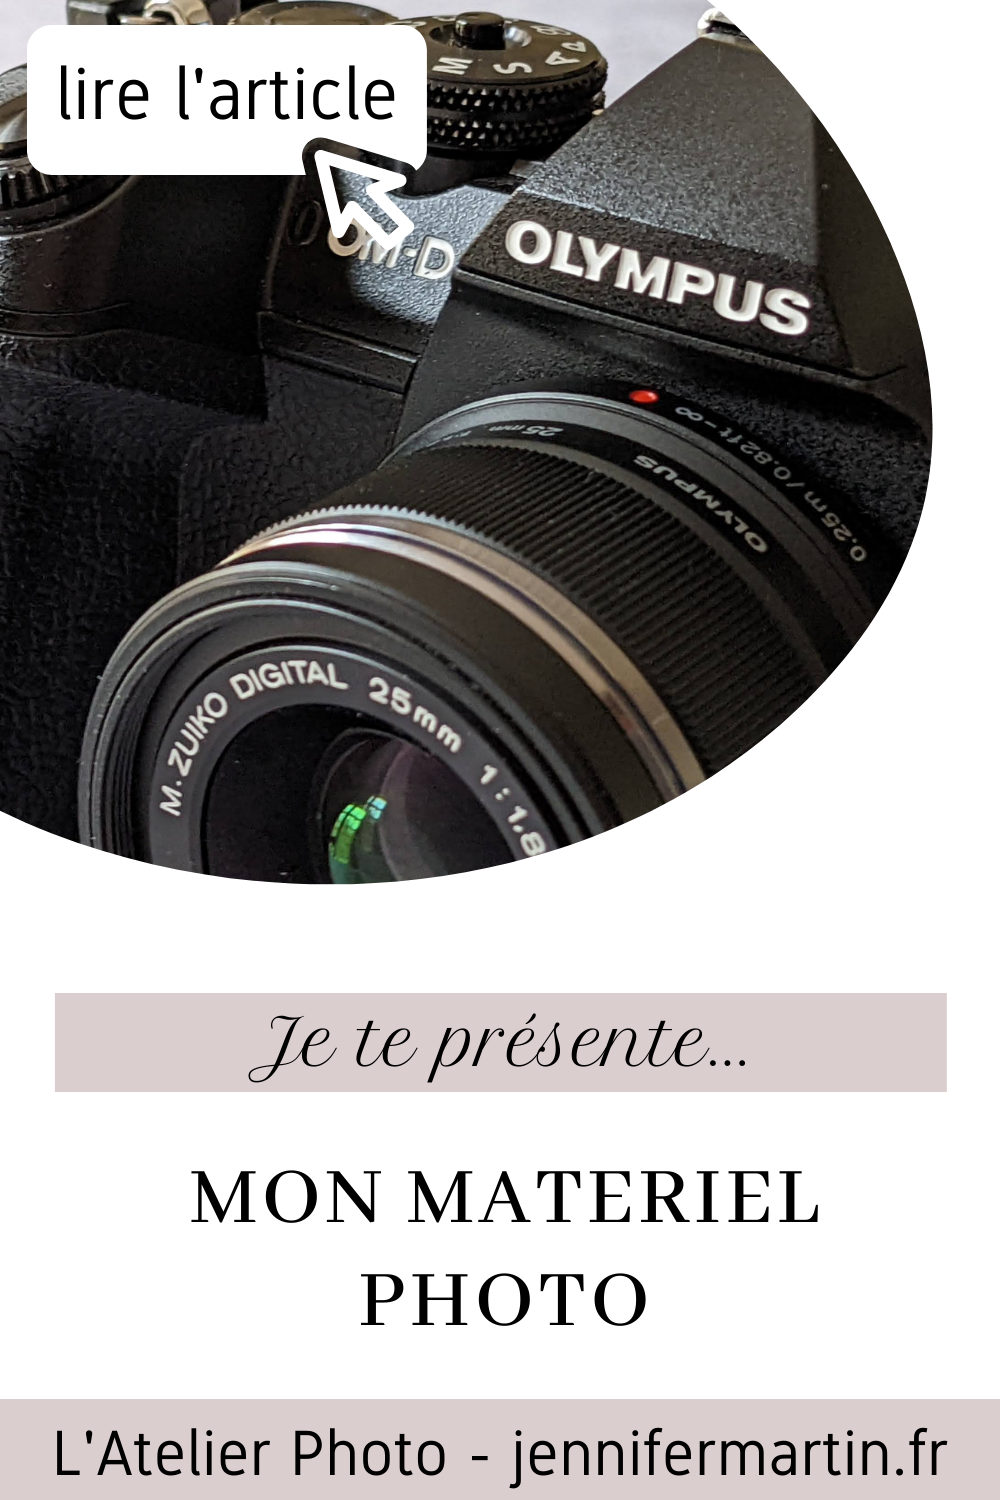 L'Atelier Photo | Je te présente... mon matériel photo